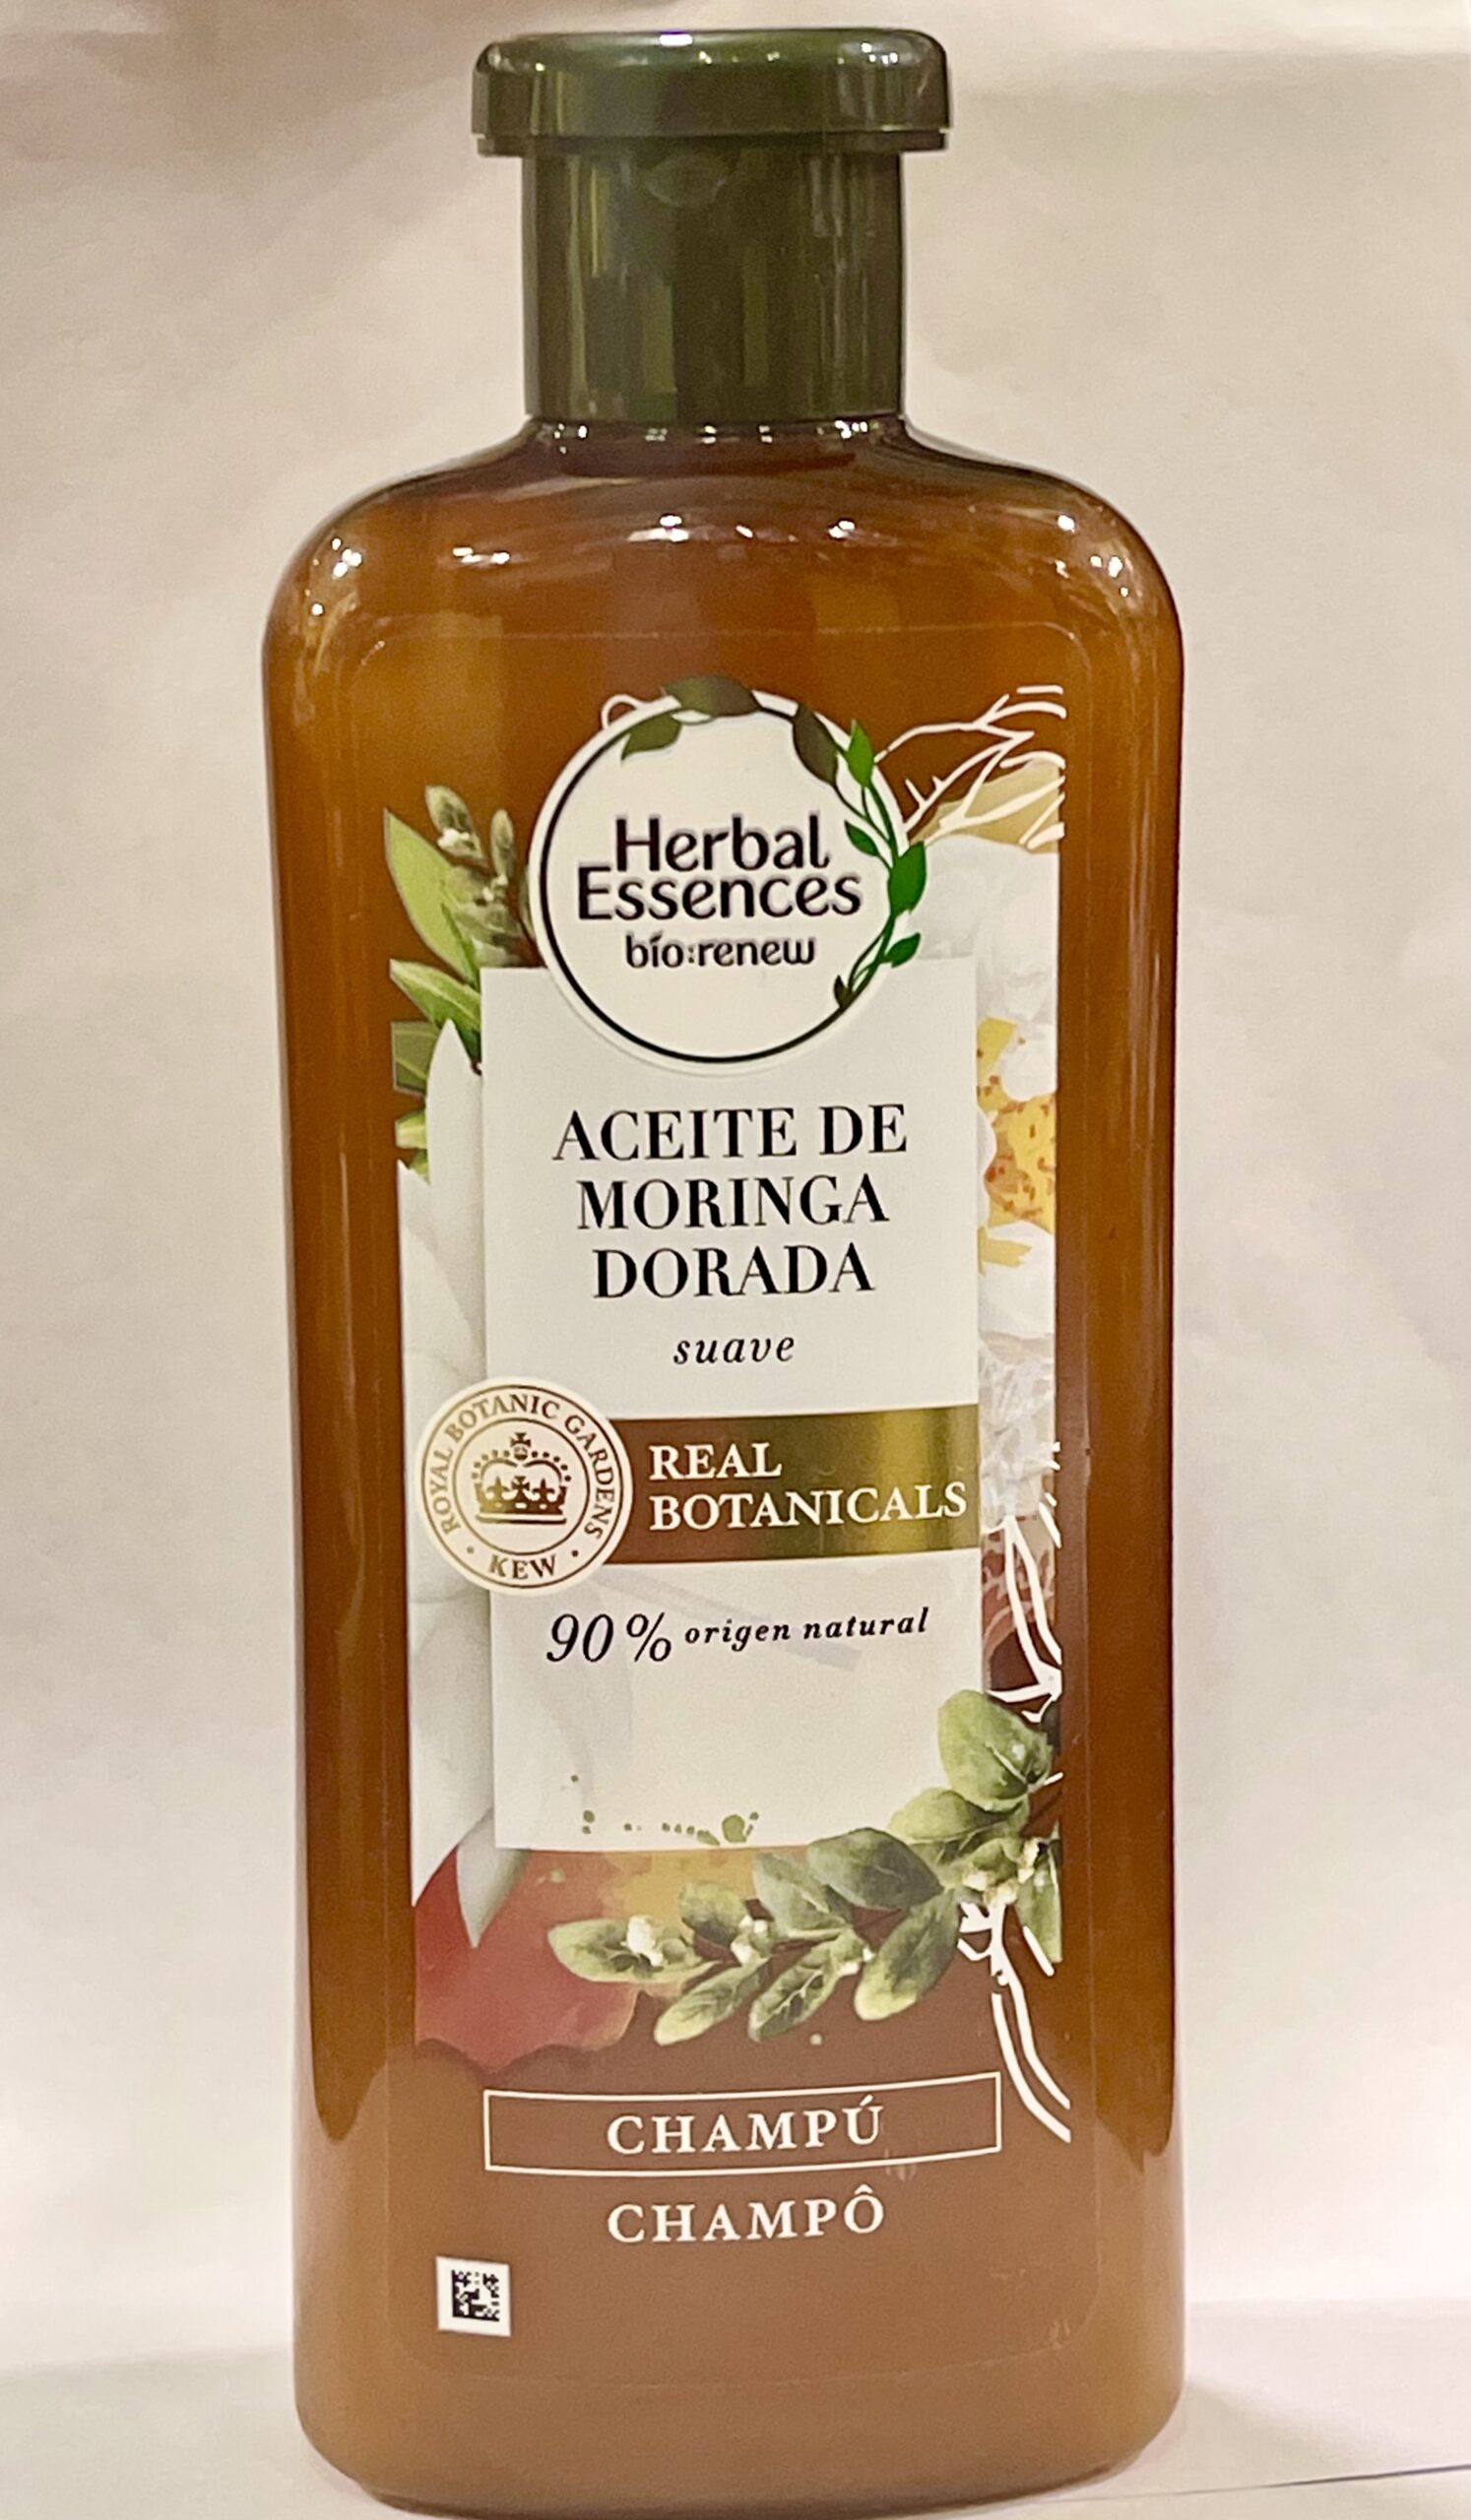 Herbal Essences Champú de aceite de moringa dorada, 13.5 onzas líquidas